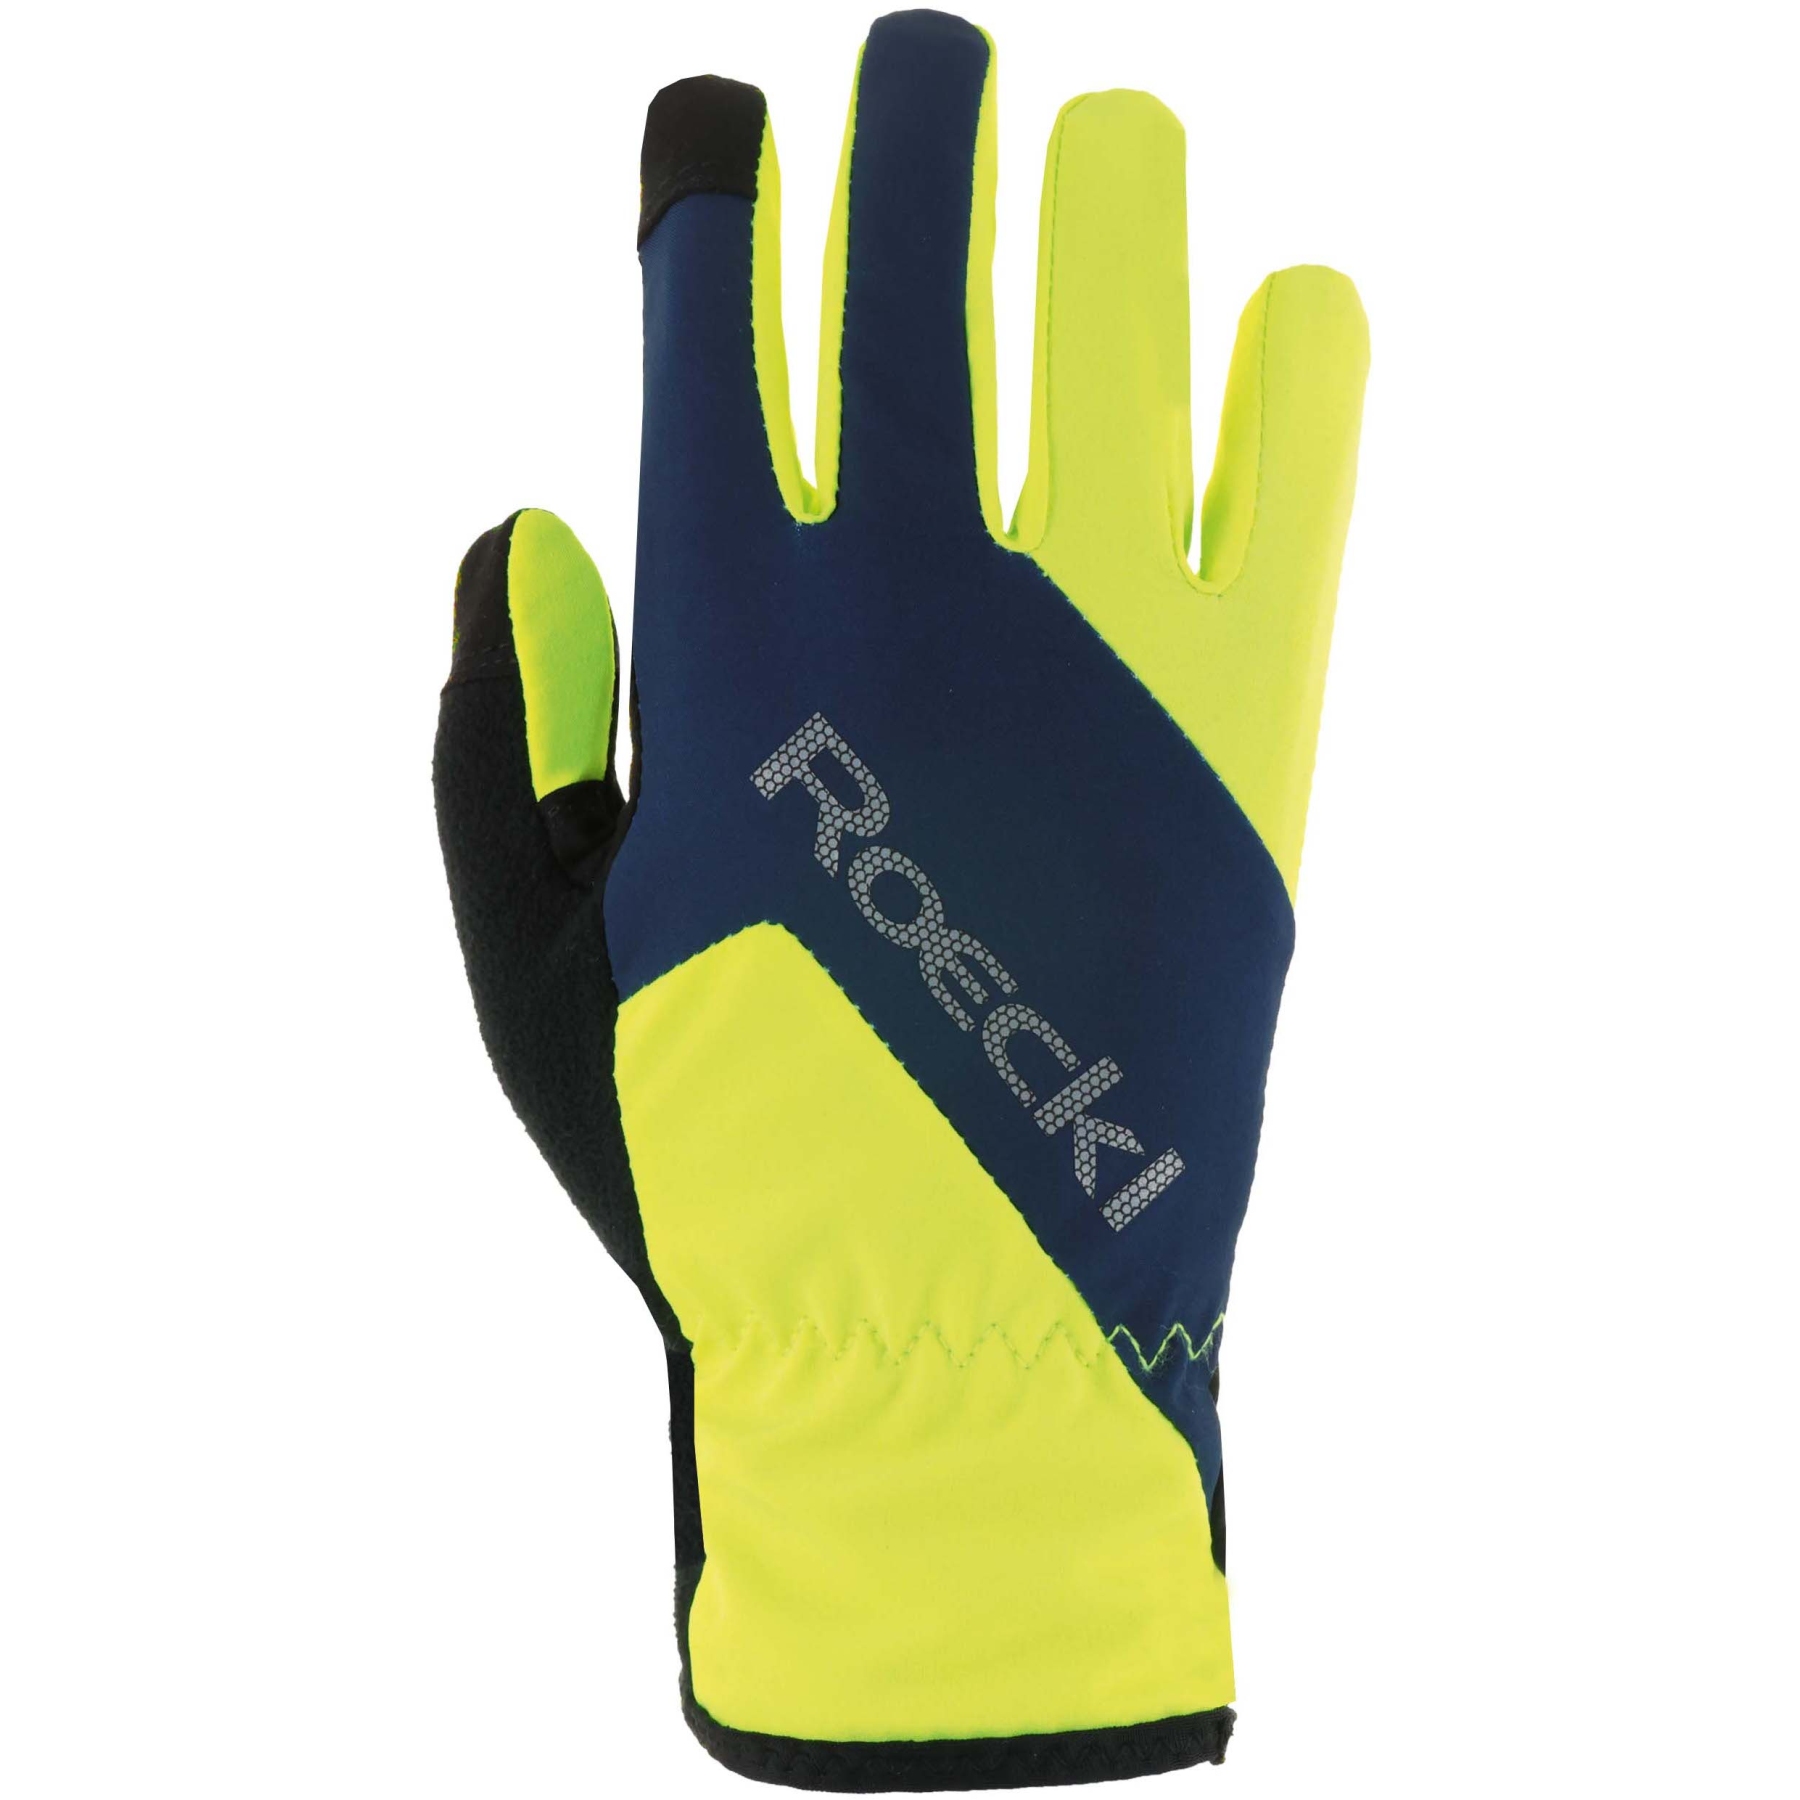 Produktbild von Roeckl Sports Zarasai Kinder Fahrradhandschuhe - fluo yellow/dress blue 2101